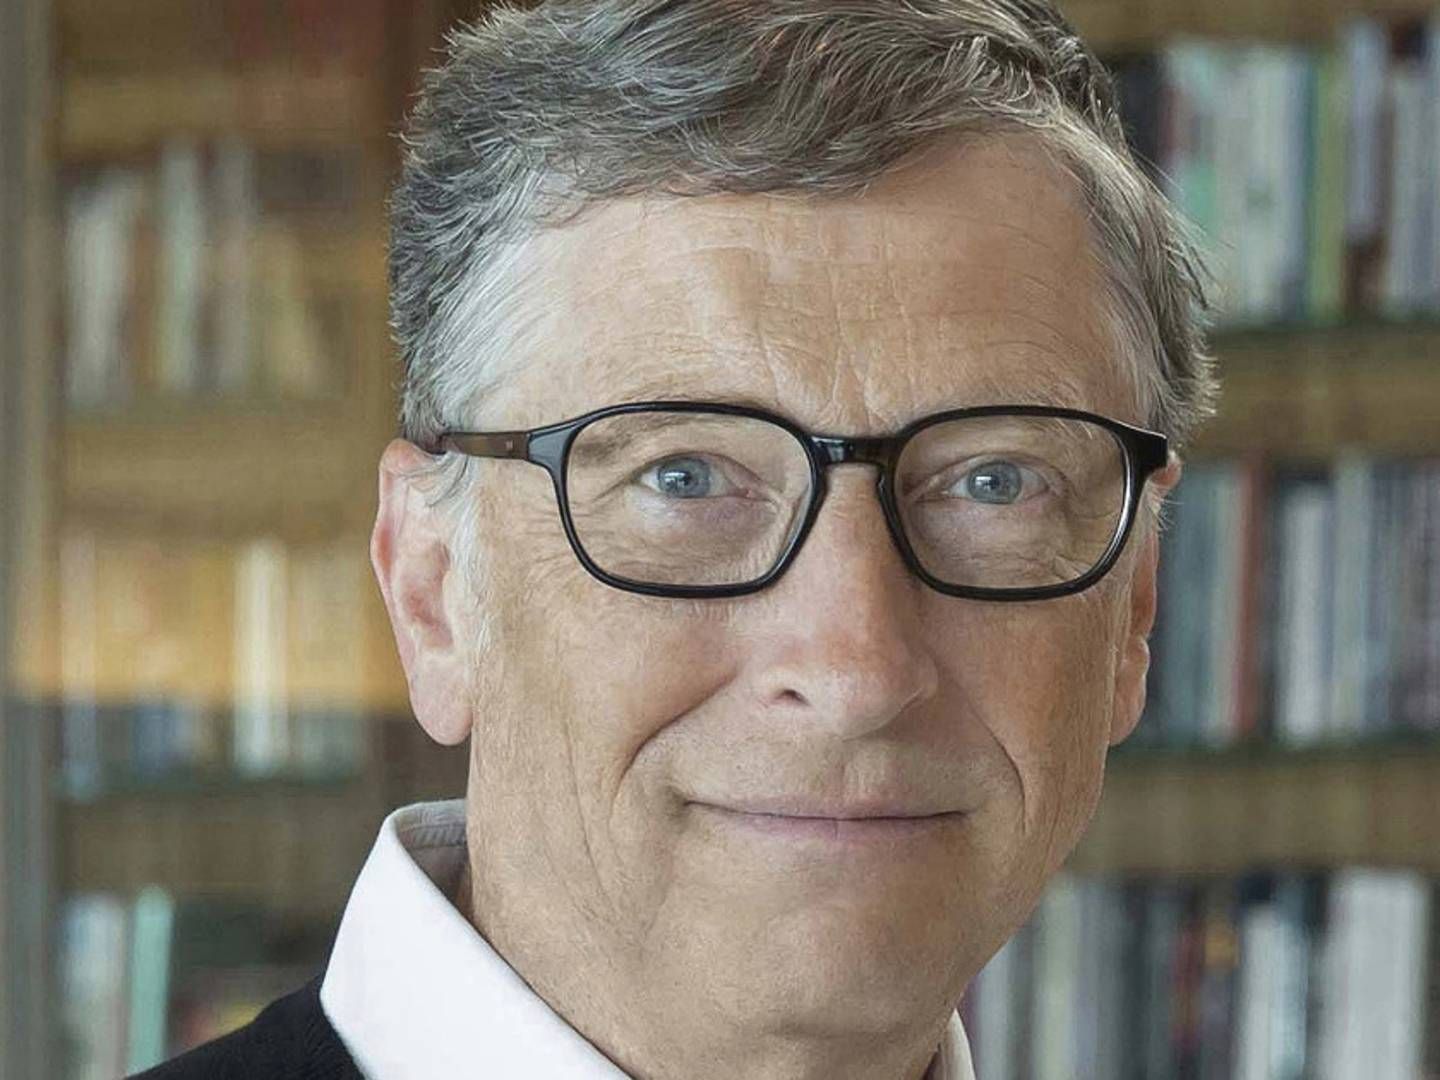 Photo: Bill & Melinda Gates Foundation/PR